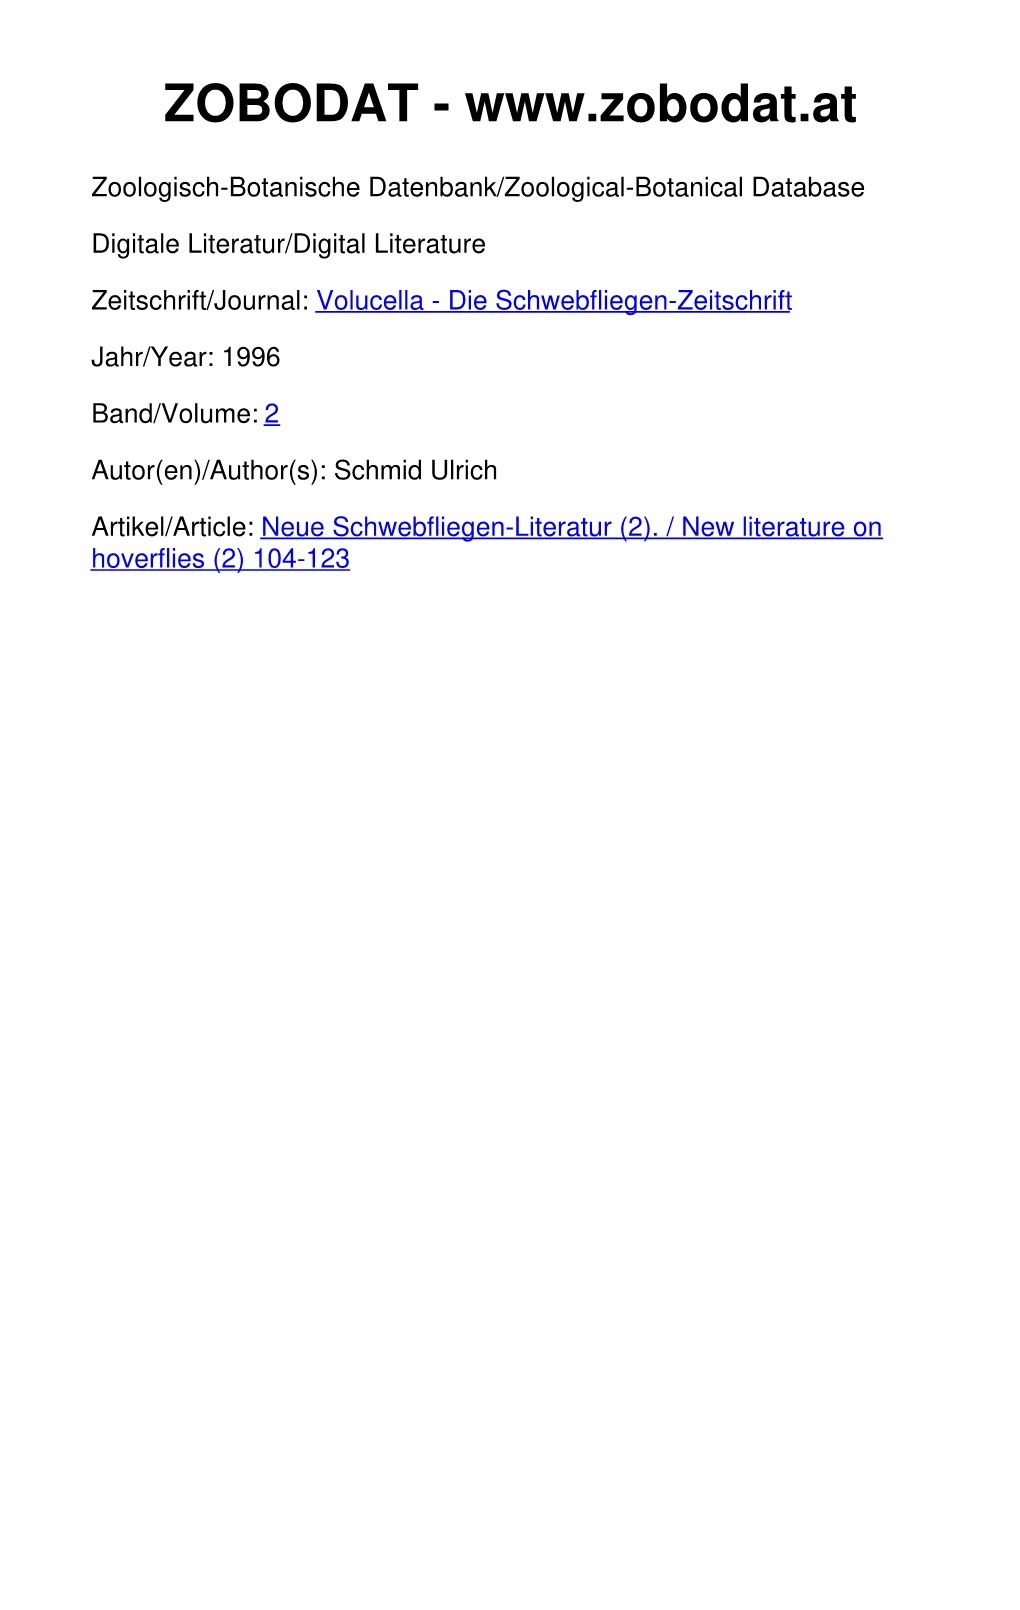 Neue Schwebfliegen-Literatur (2). / New Literature on Hoverflies